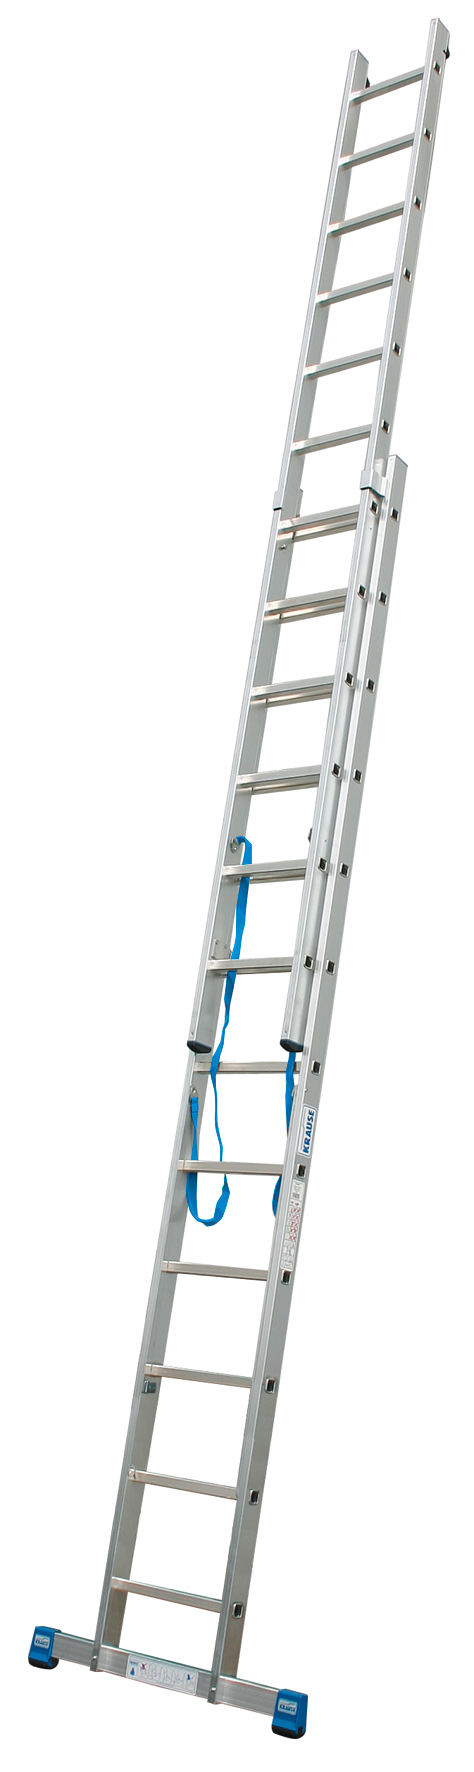 Дополнительное изображение Krause Stabilo лестница алюминиевая двухсторонняя (2х9 ступеней)